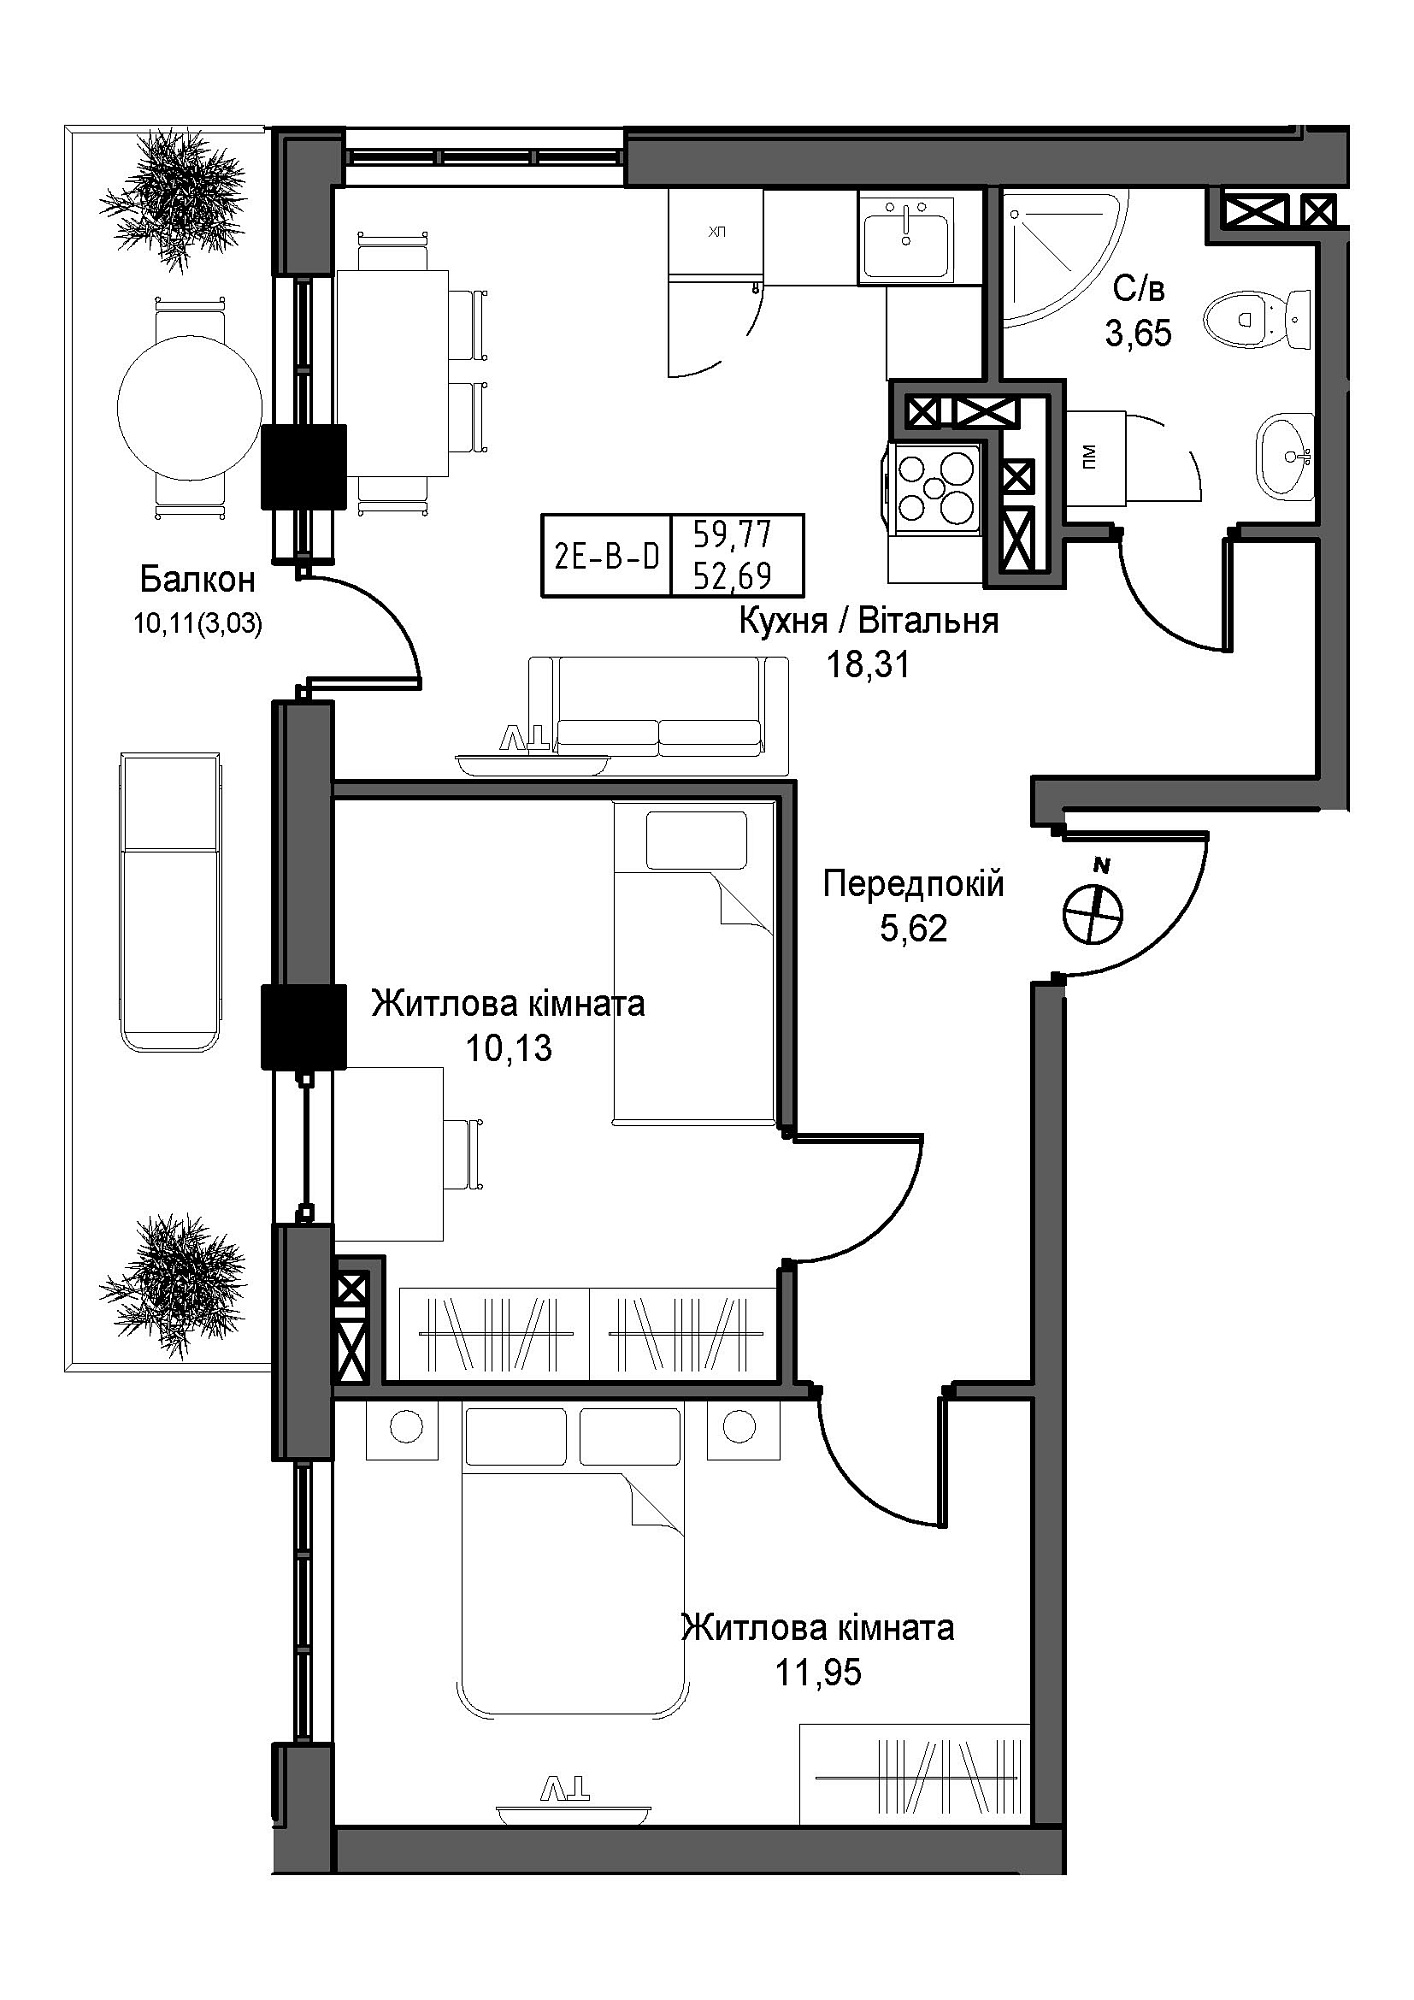 Планировка 2-к квартира площей 52.69м2, UM-007-11/0001.